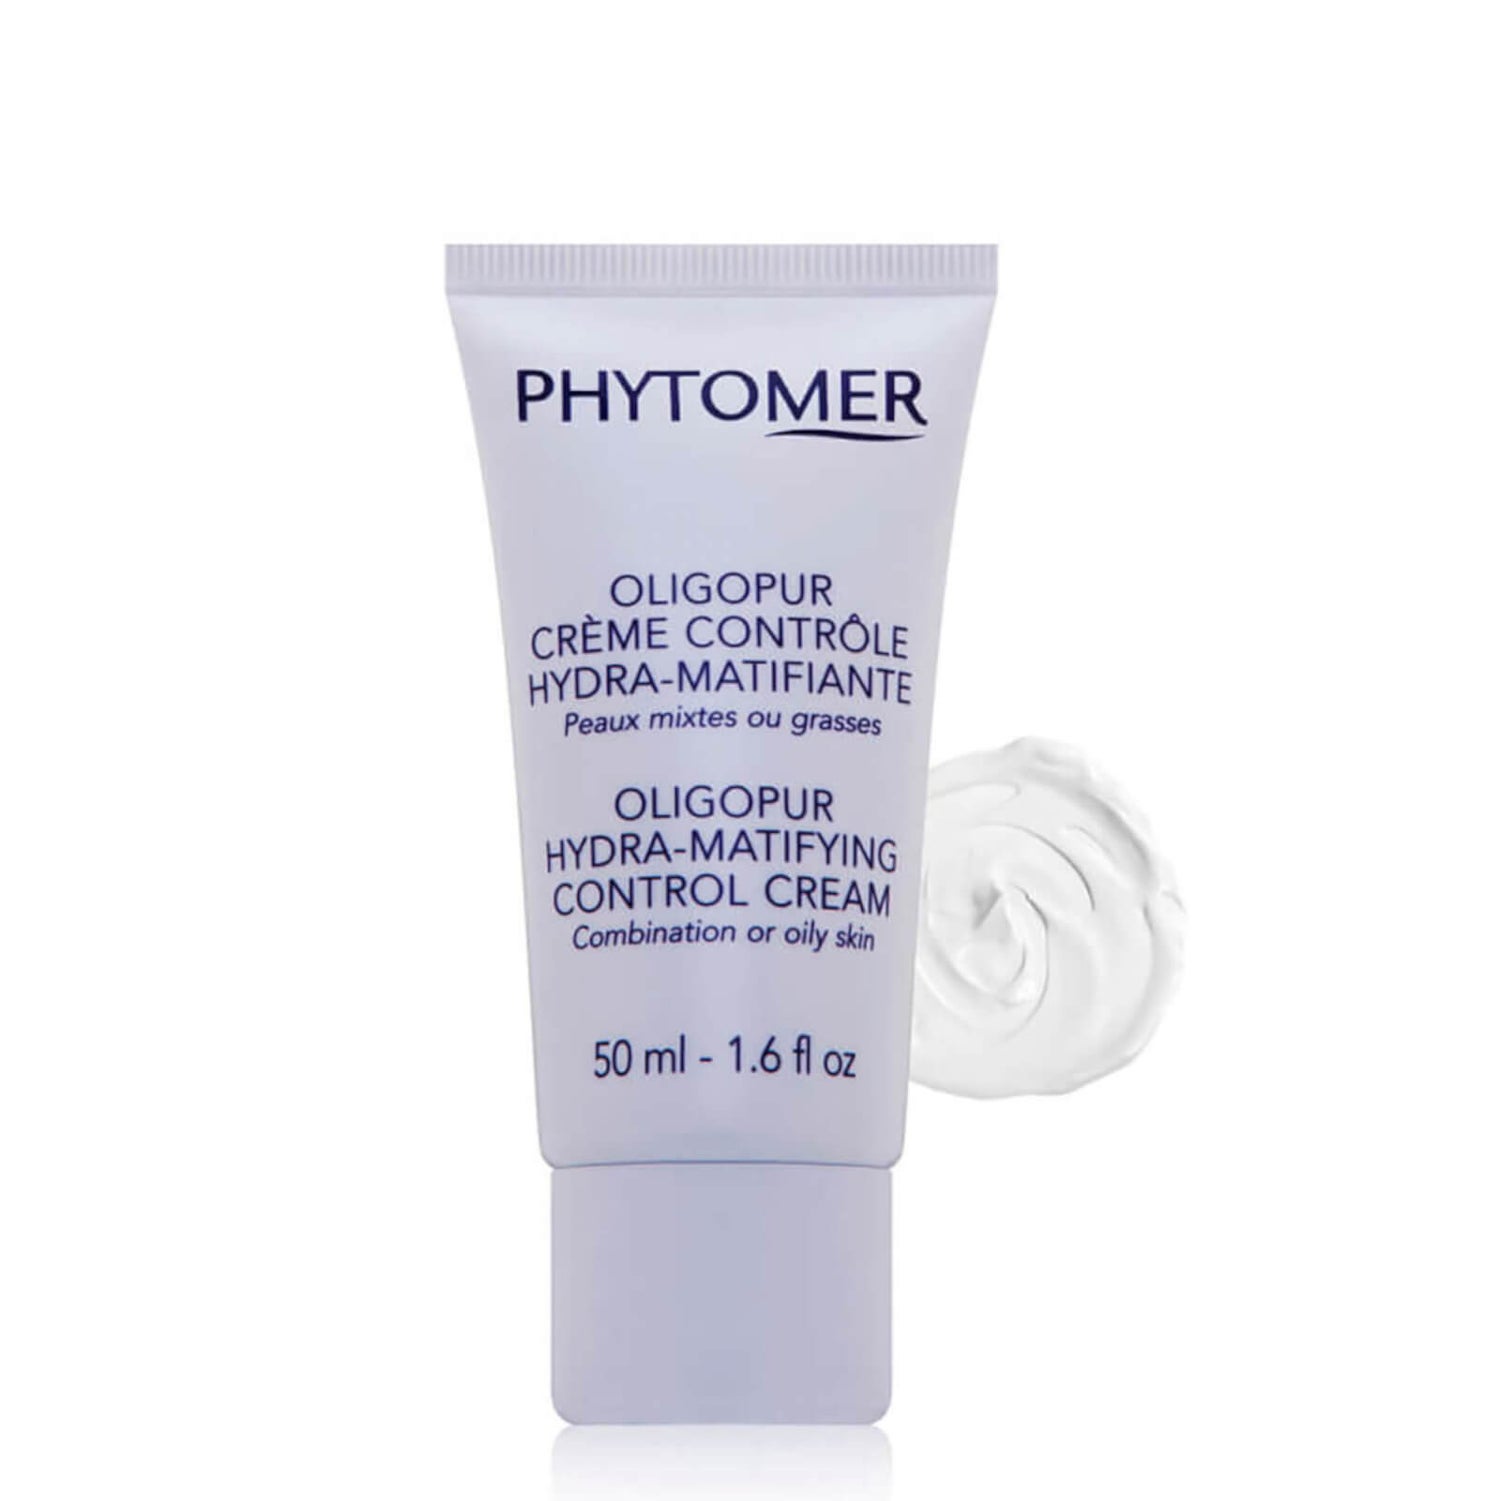 Phytomer Oligopur Hydra-Matifying Control Cream (1.6 fl. oz.)